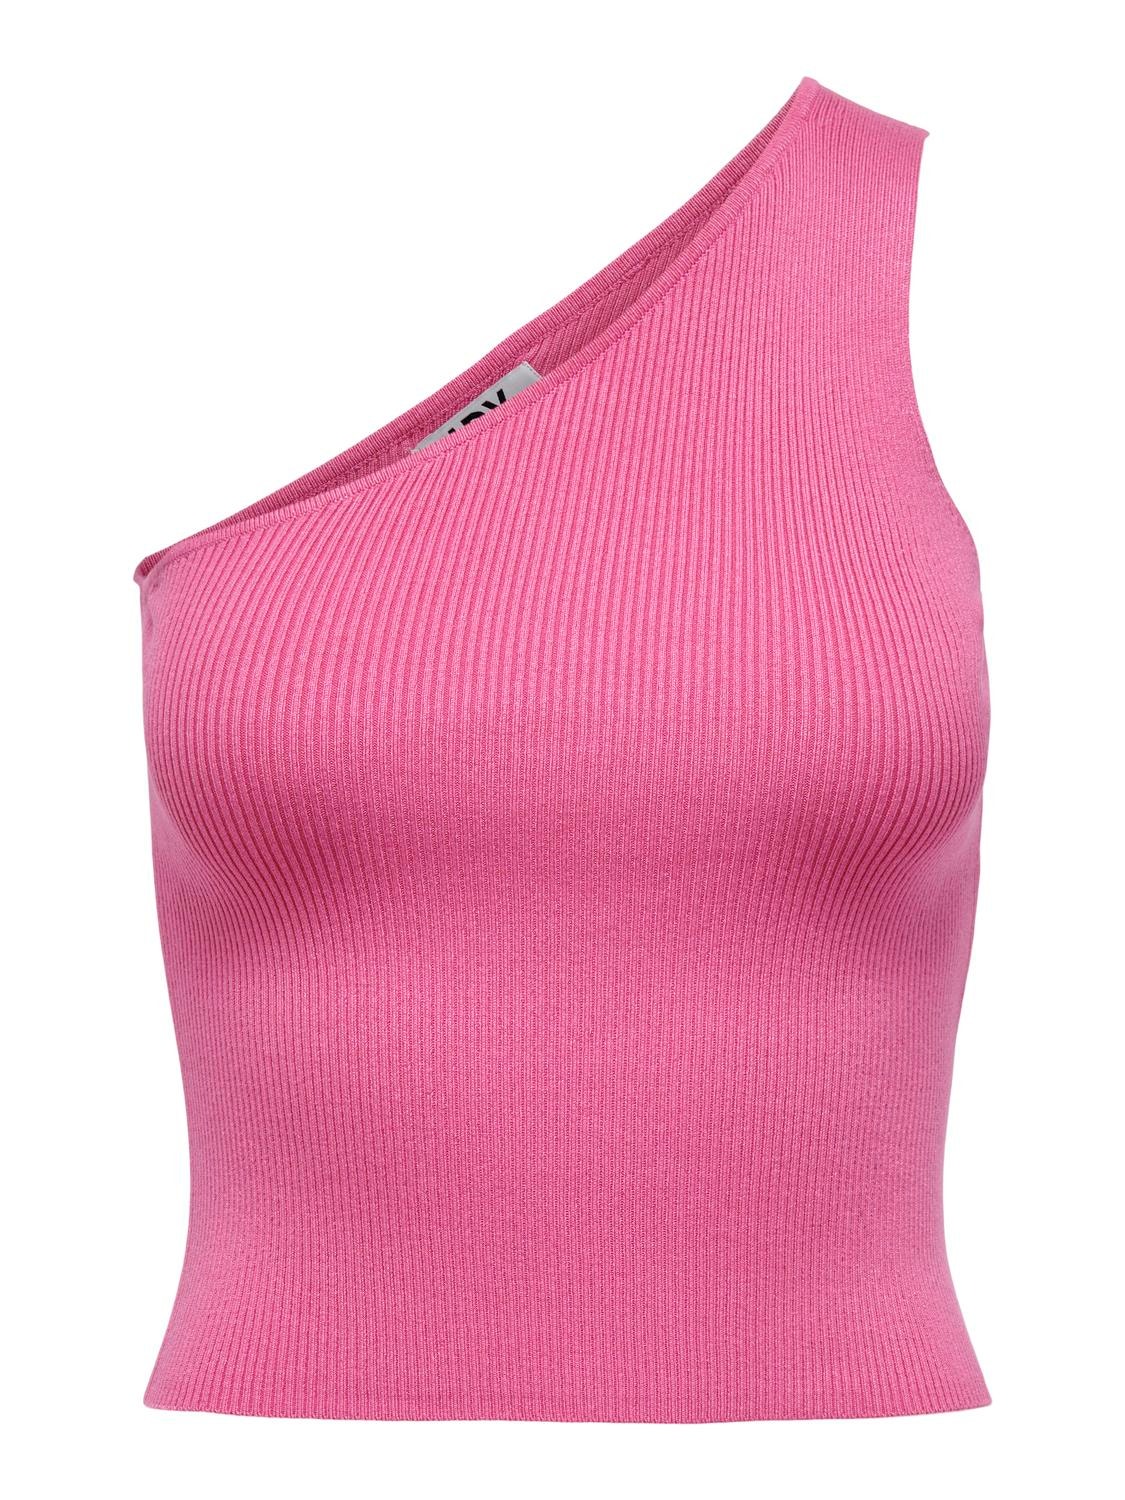 ONLY Ein-Schulter Ausschnitt Pullover -Pink Power - 15290755